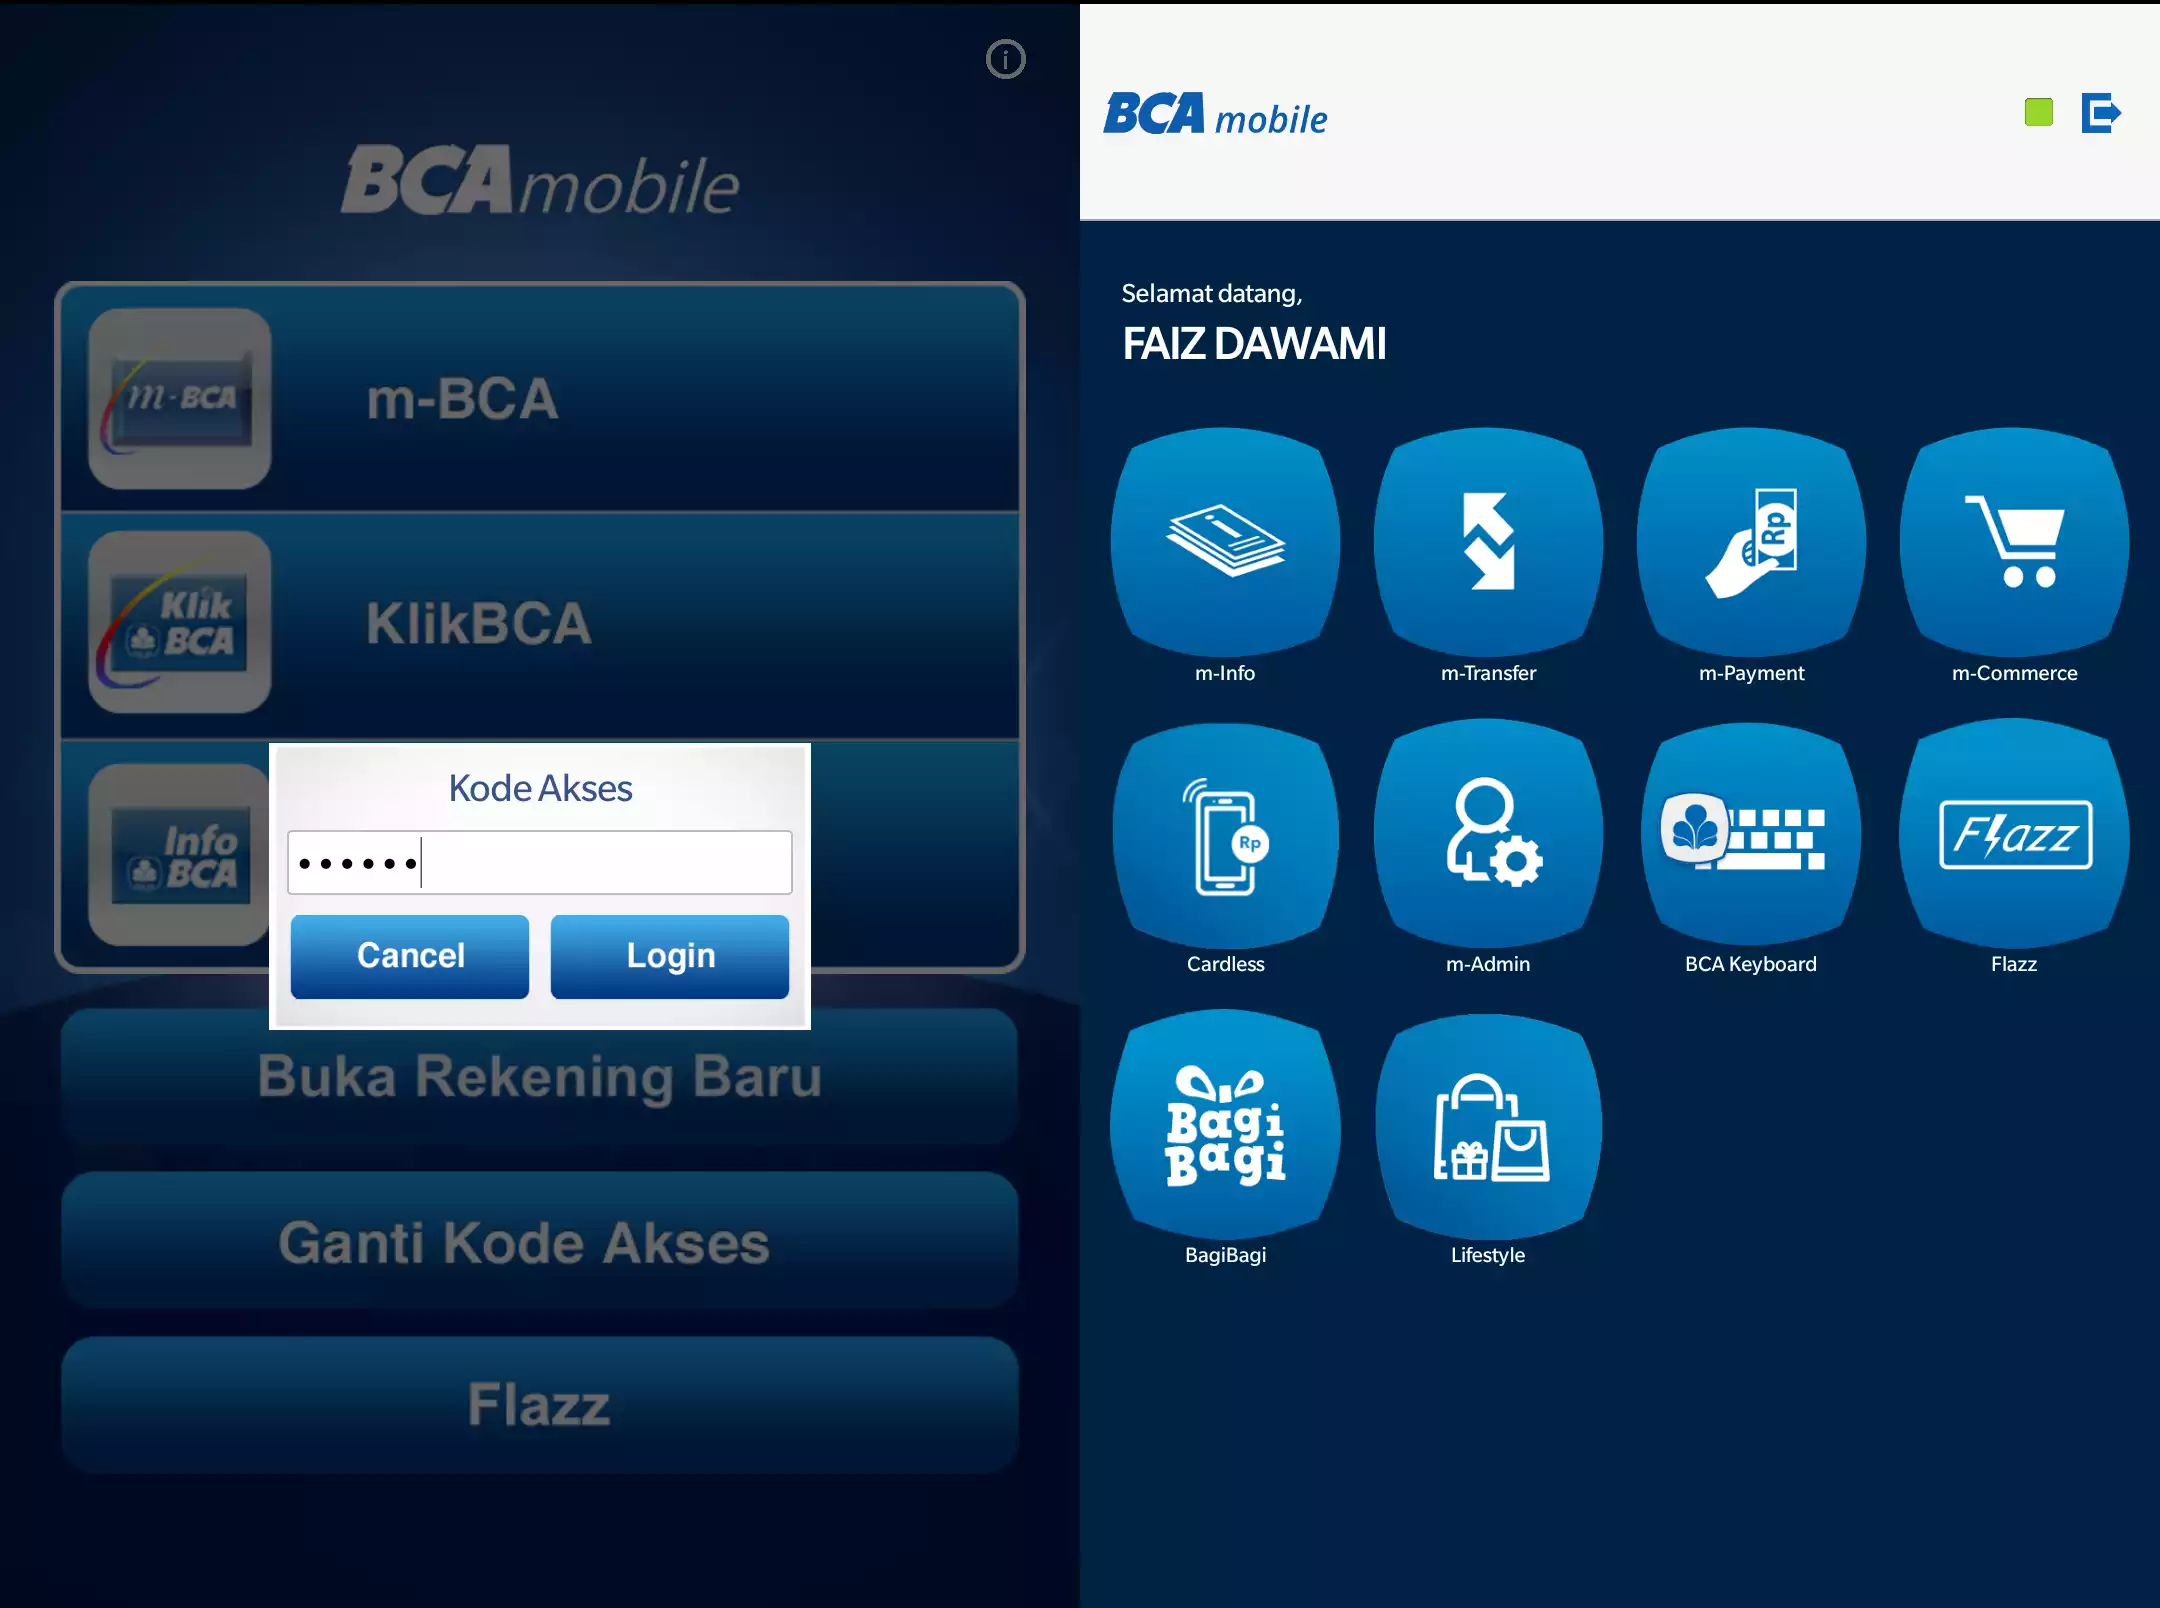 Login ke BCA Mobile dan Masukkan Kode Akses